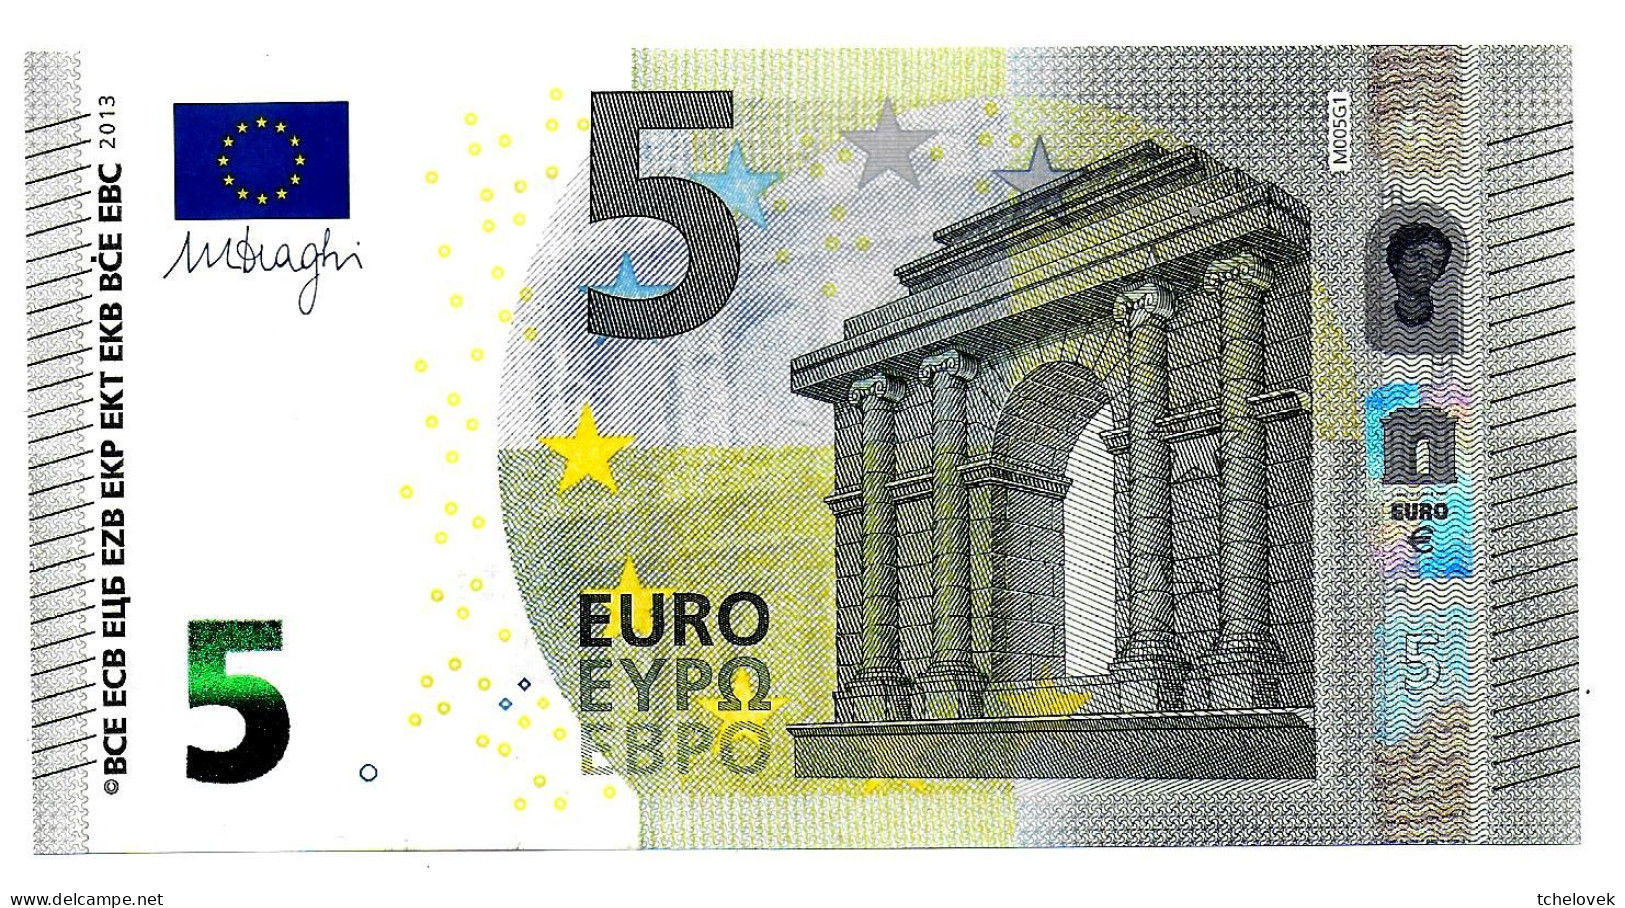 (Billets). 5 Euros 2013 Serie MA, M005G1 Signature 3 Mario Draghi N° MA 3582856982 UNC - 5 Euro